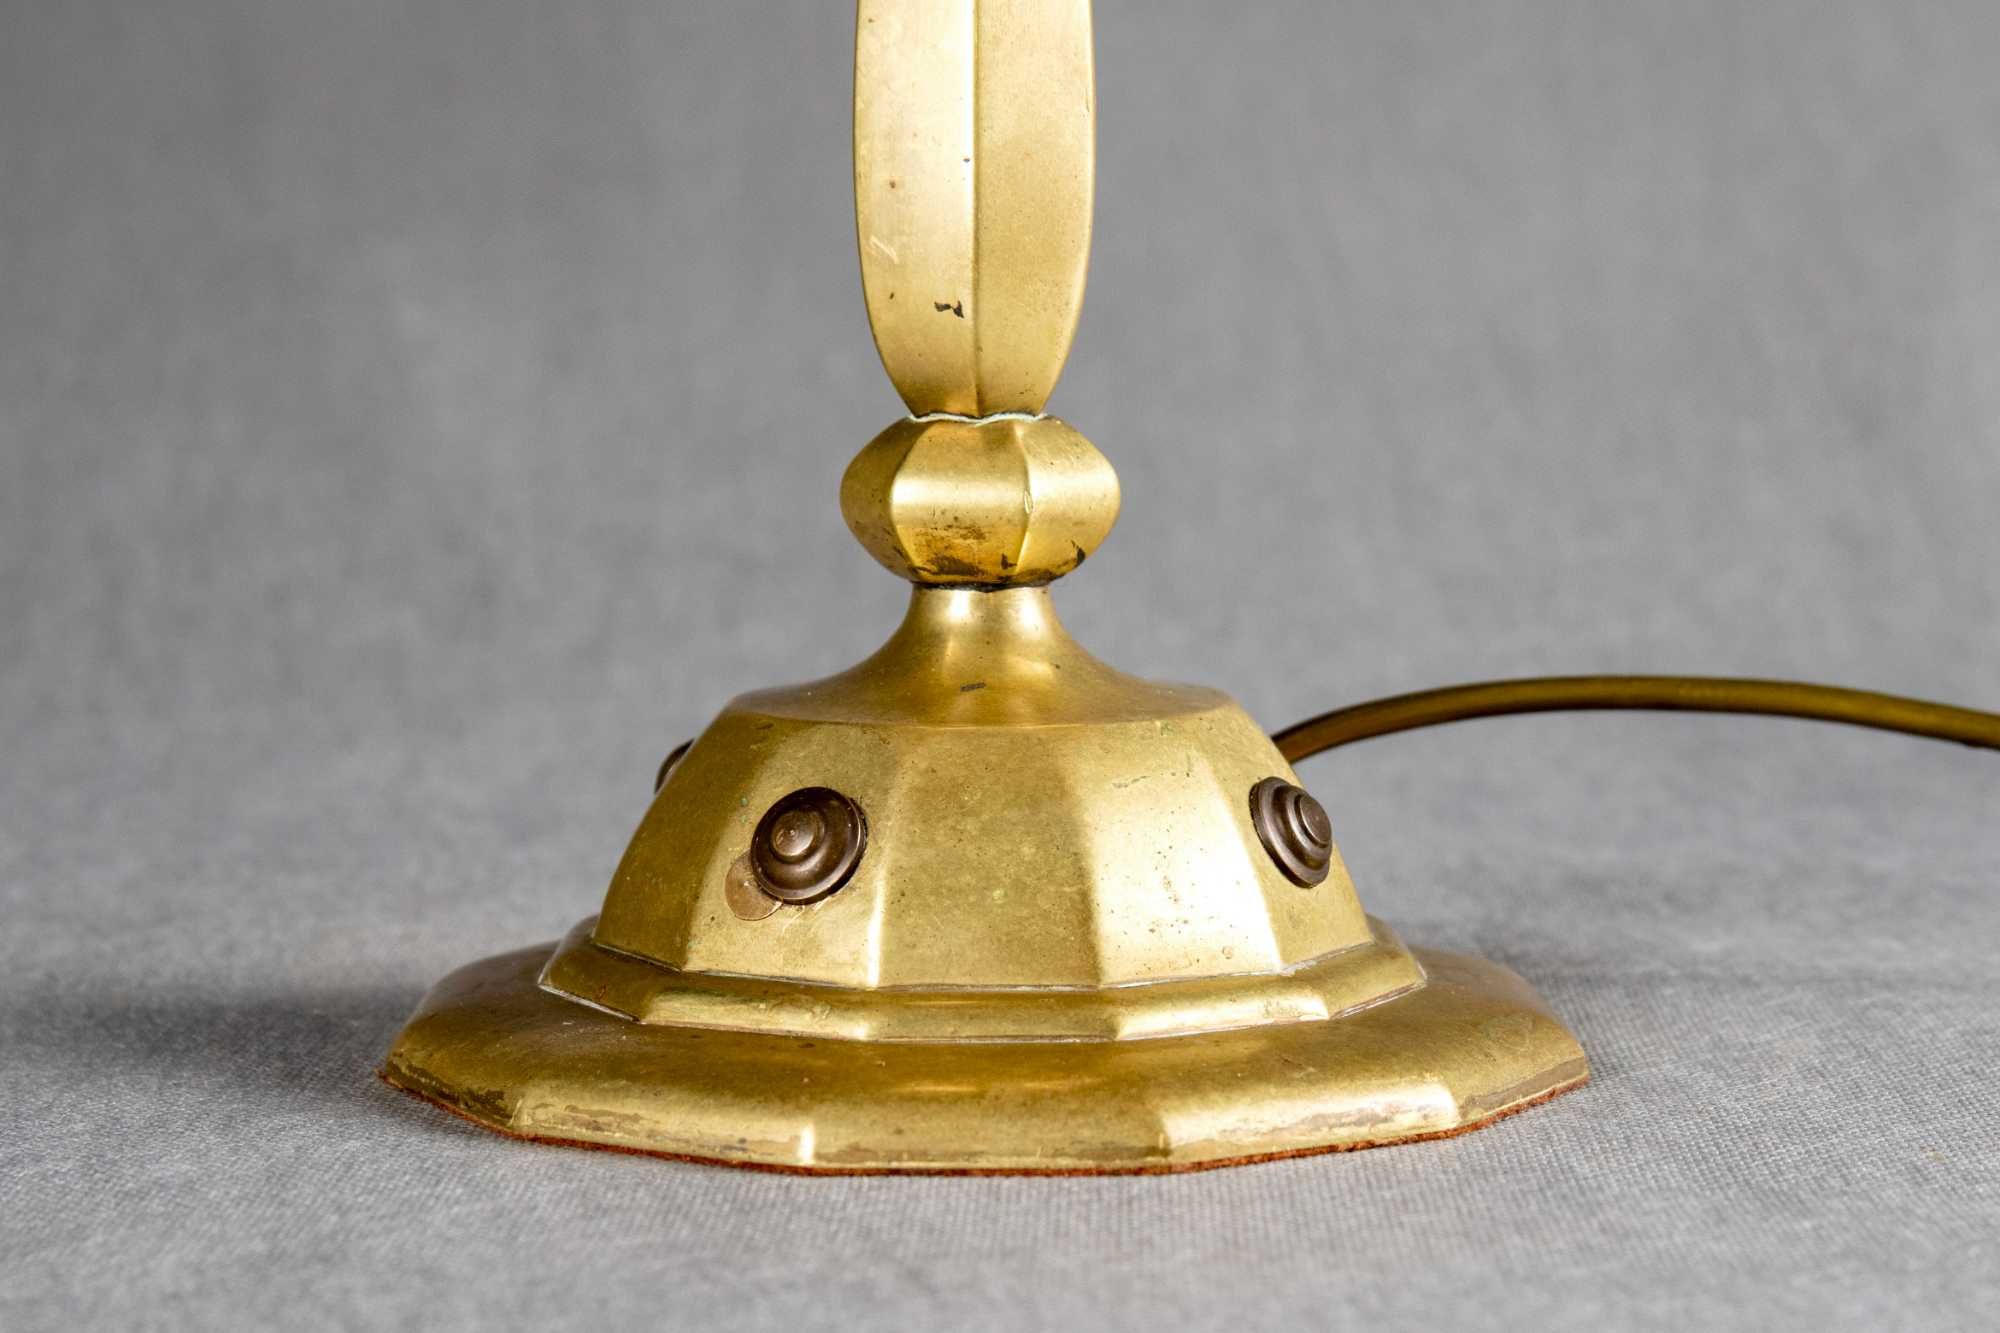 Stara mosiężna lampa gabinetowa z kloszem witrażowym w stylu Tiffany